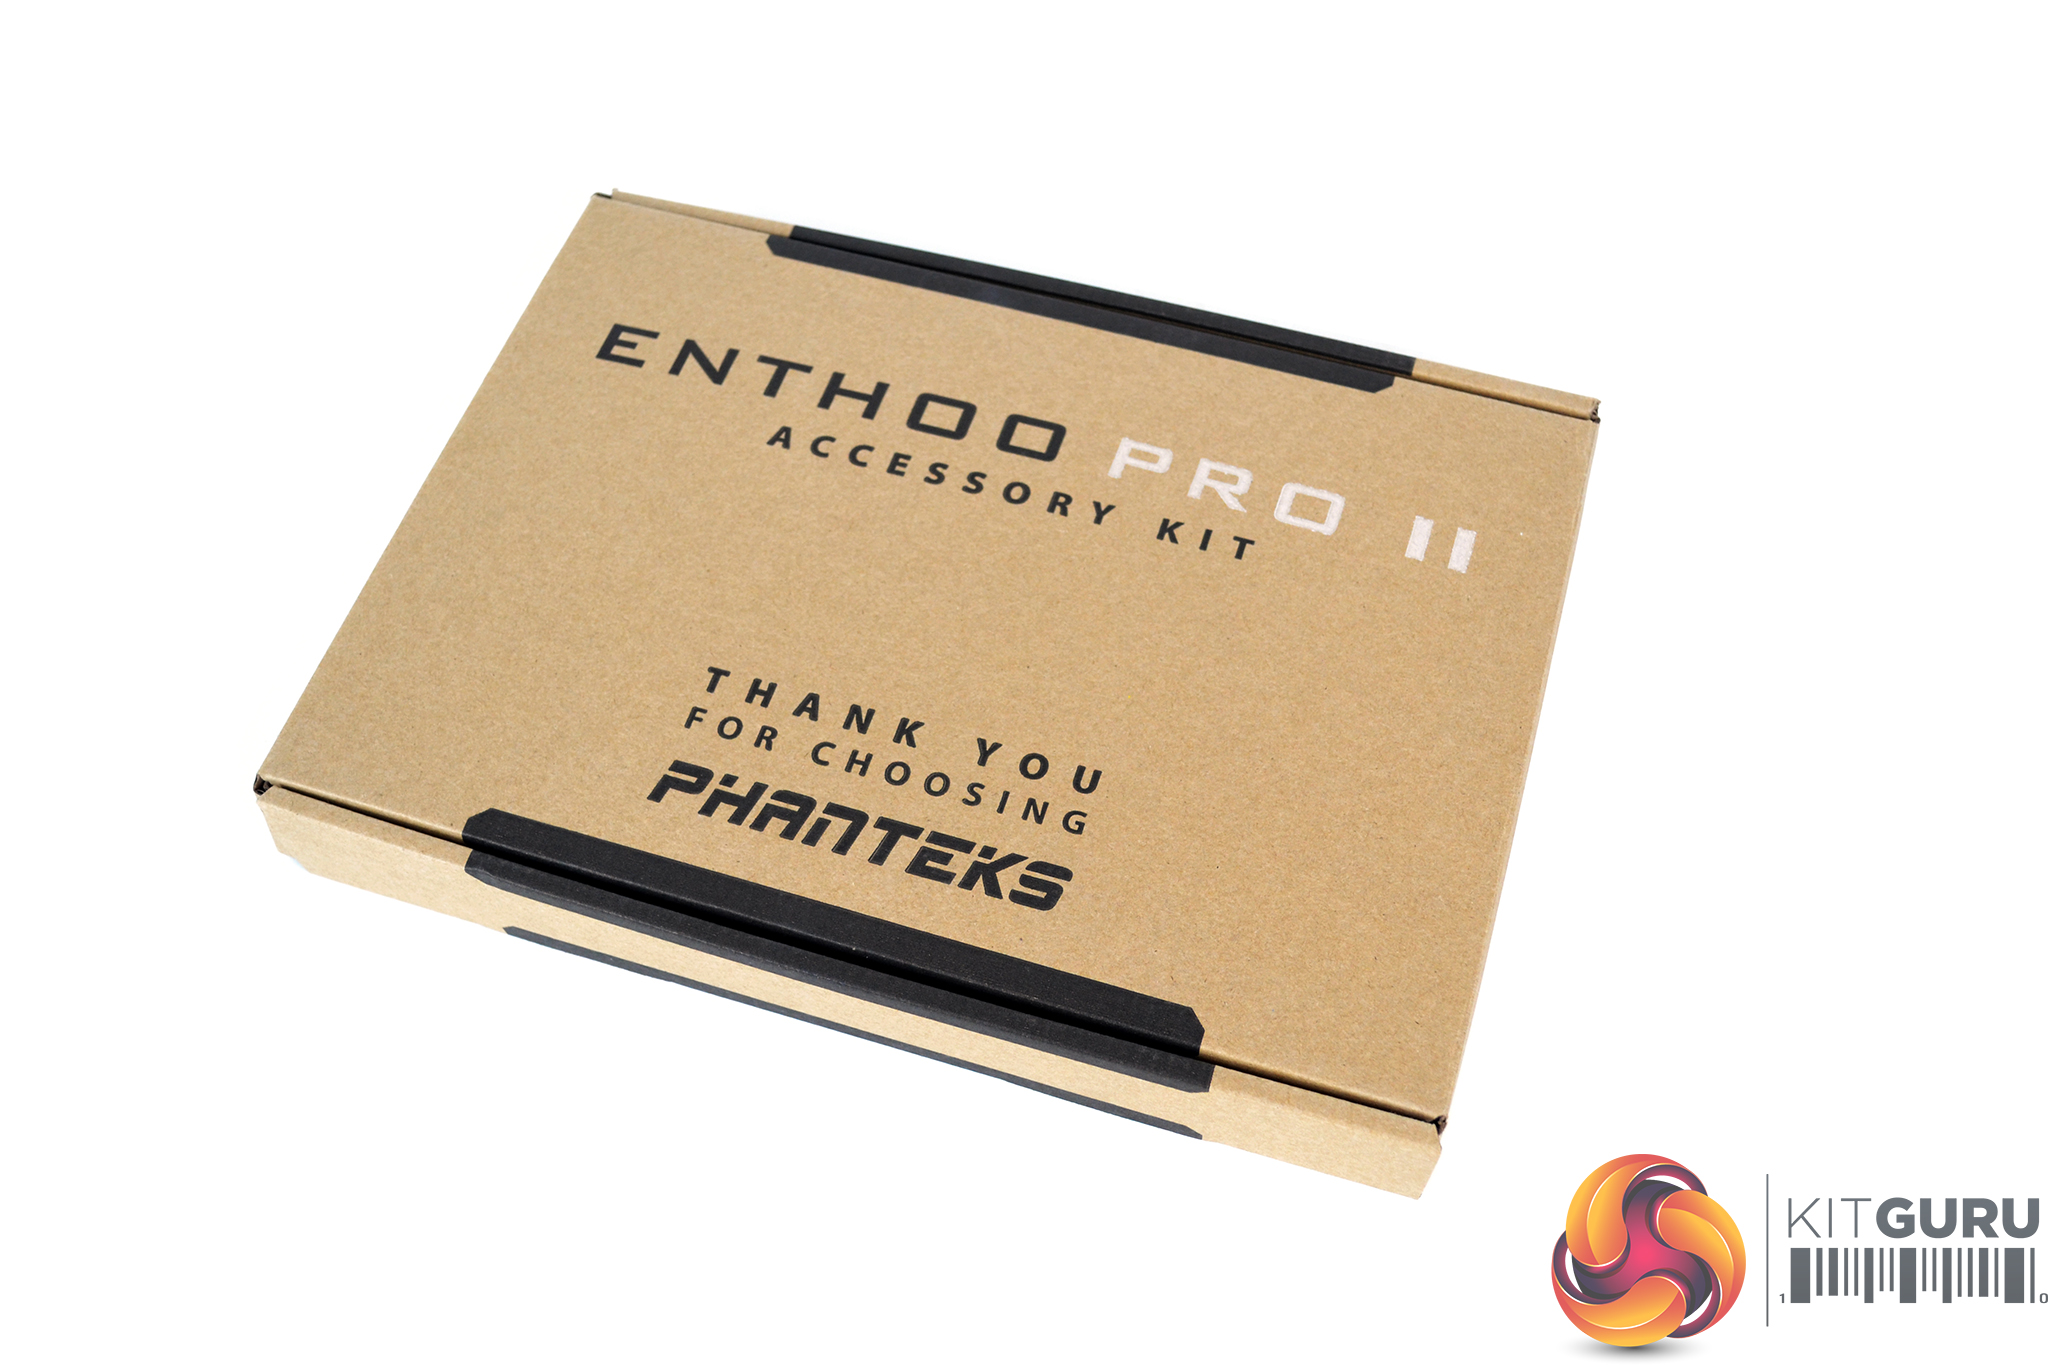 Phanteks Enthoo Pro II Case Review | KitGuru - Part 2